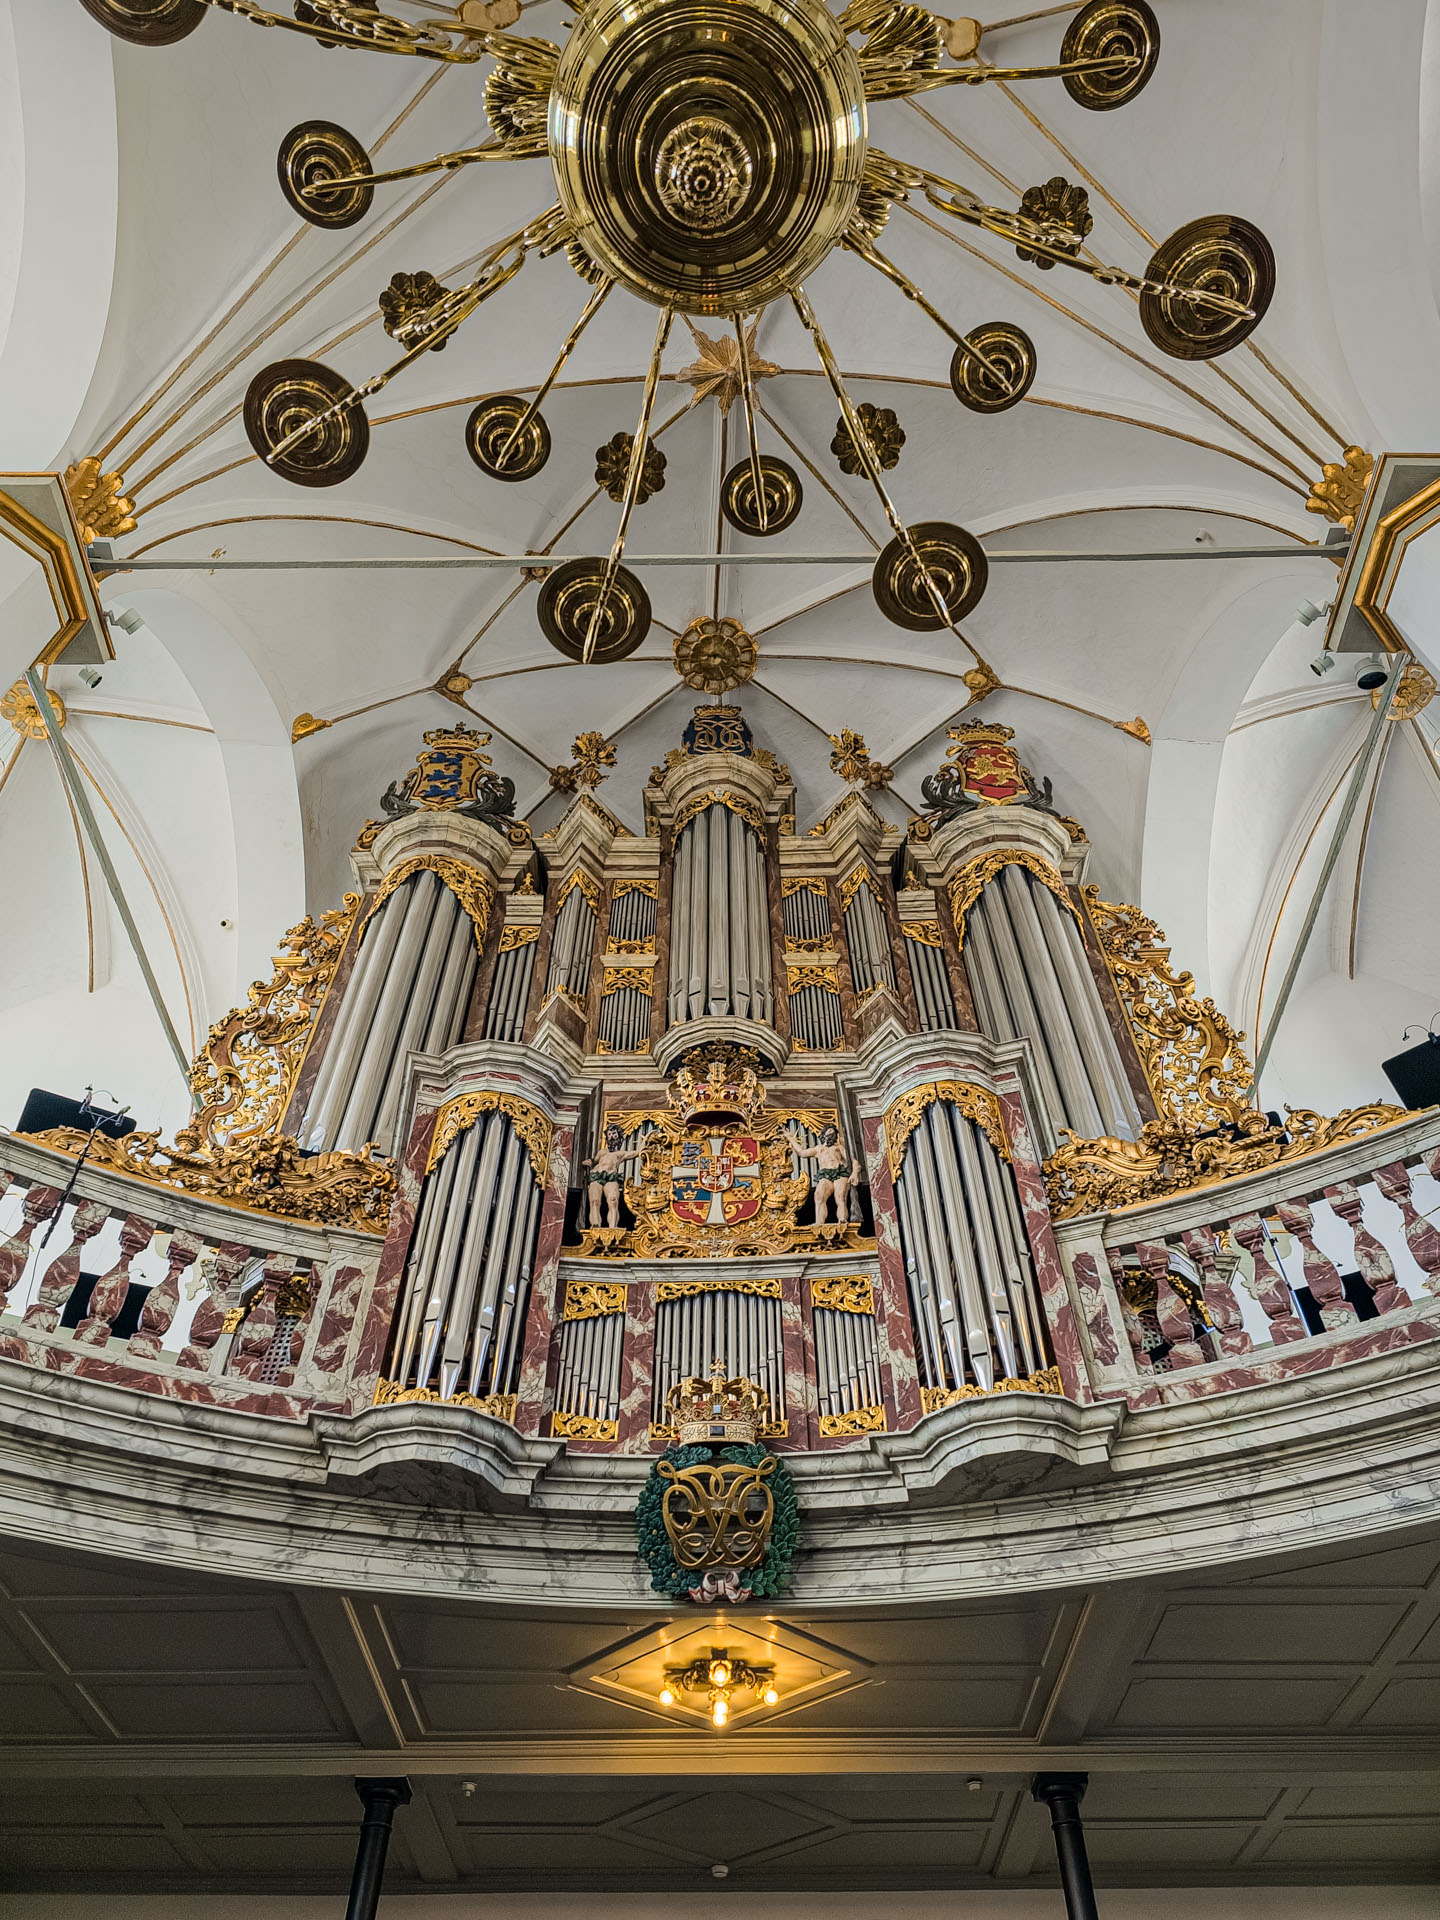 Organ inside the Round Tower Copenhagen